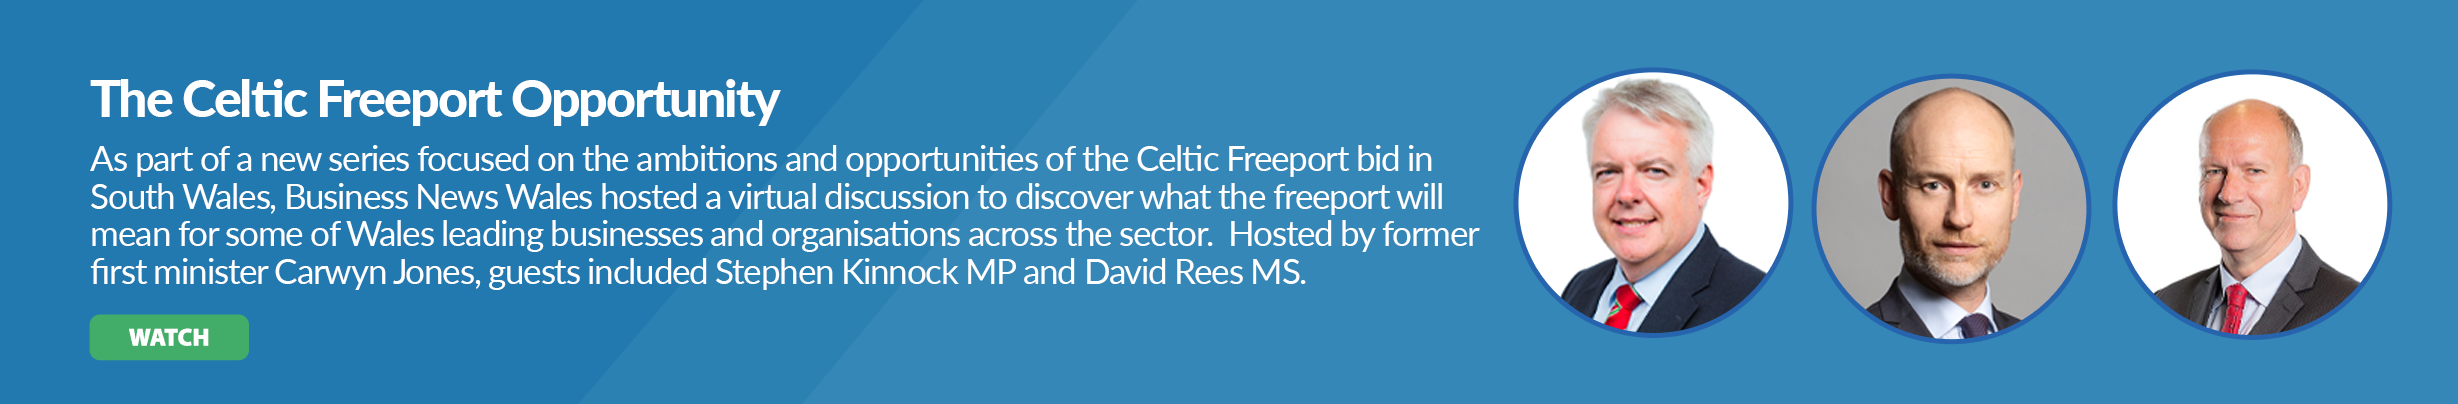 The Celtic Freeport Opportunity_banner